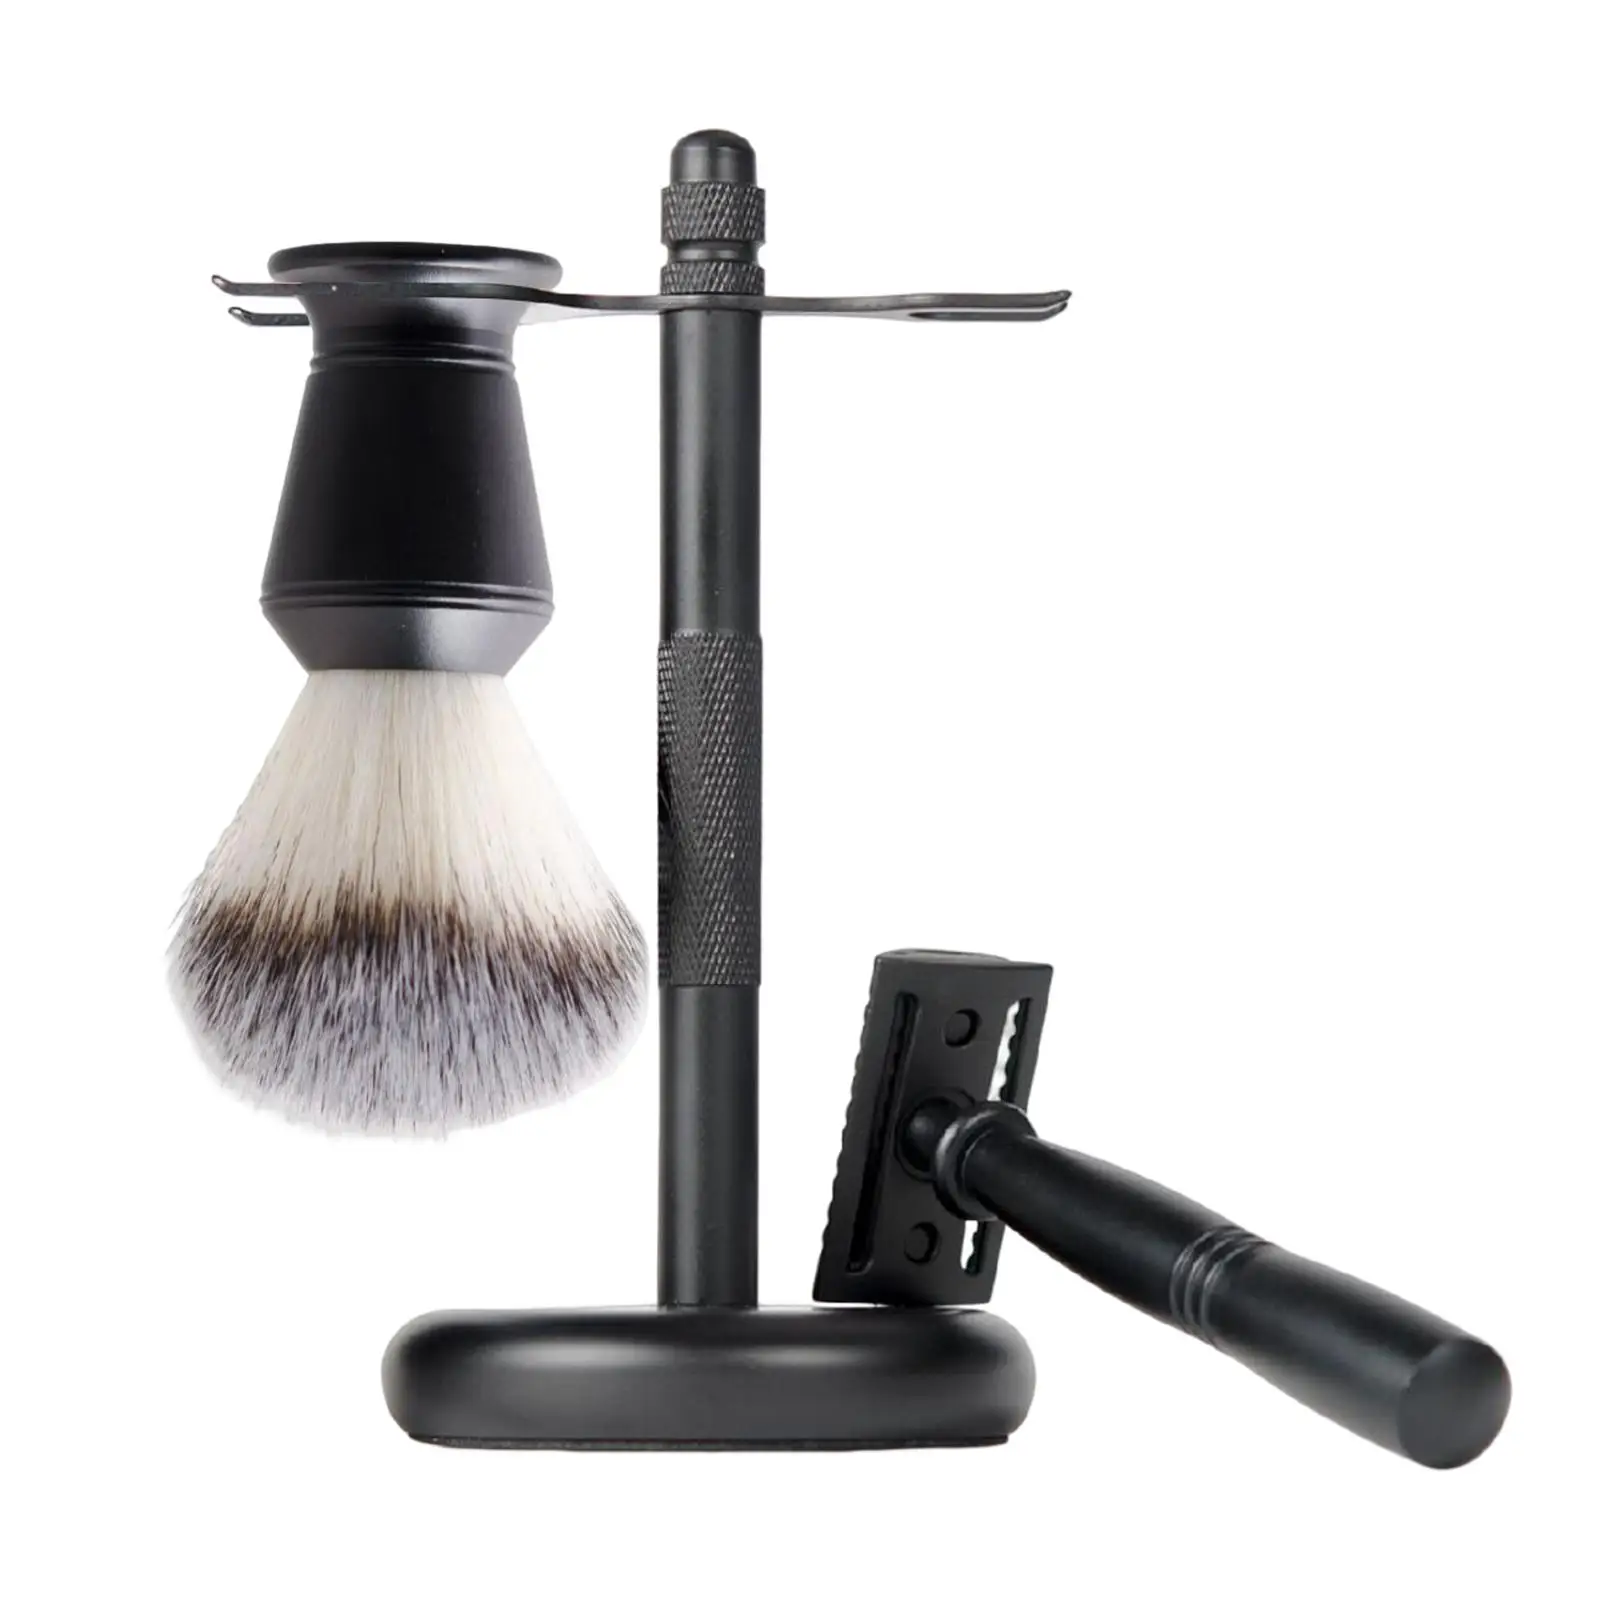 3x Shaving Kit Black Color Shaving Stand Shaving Brush Set Includes Edge Razor, Holder, Shaving Brush Luxury Father`s Day Gifts